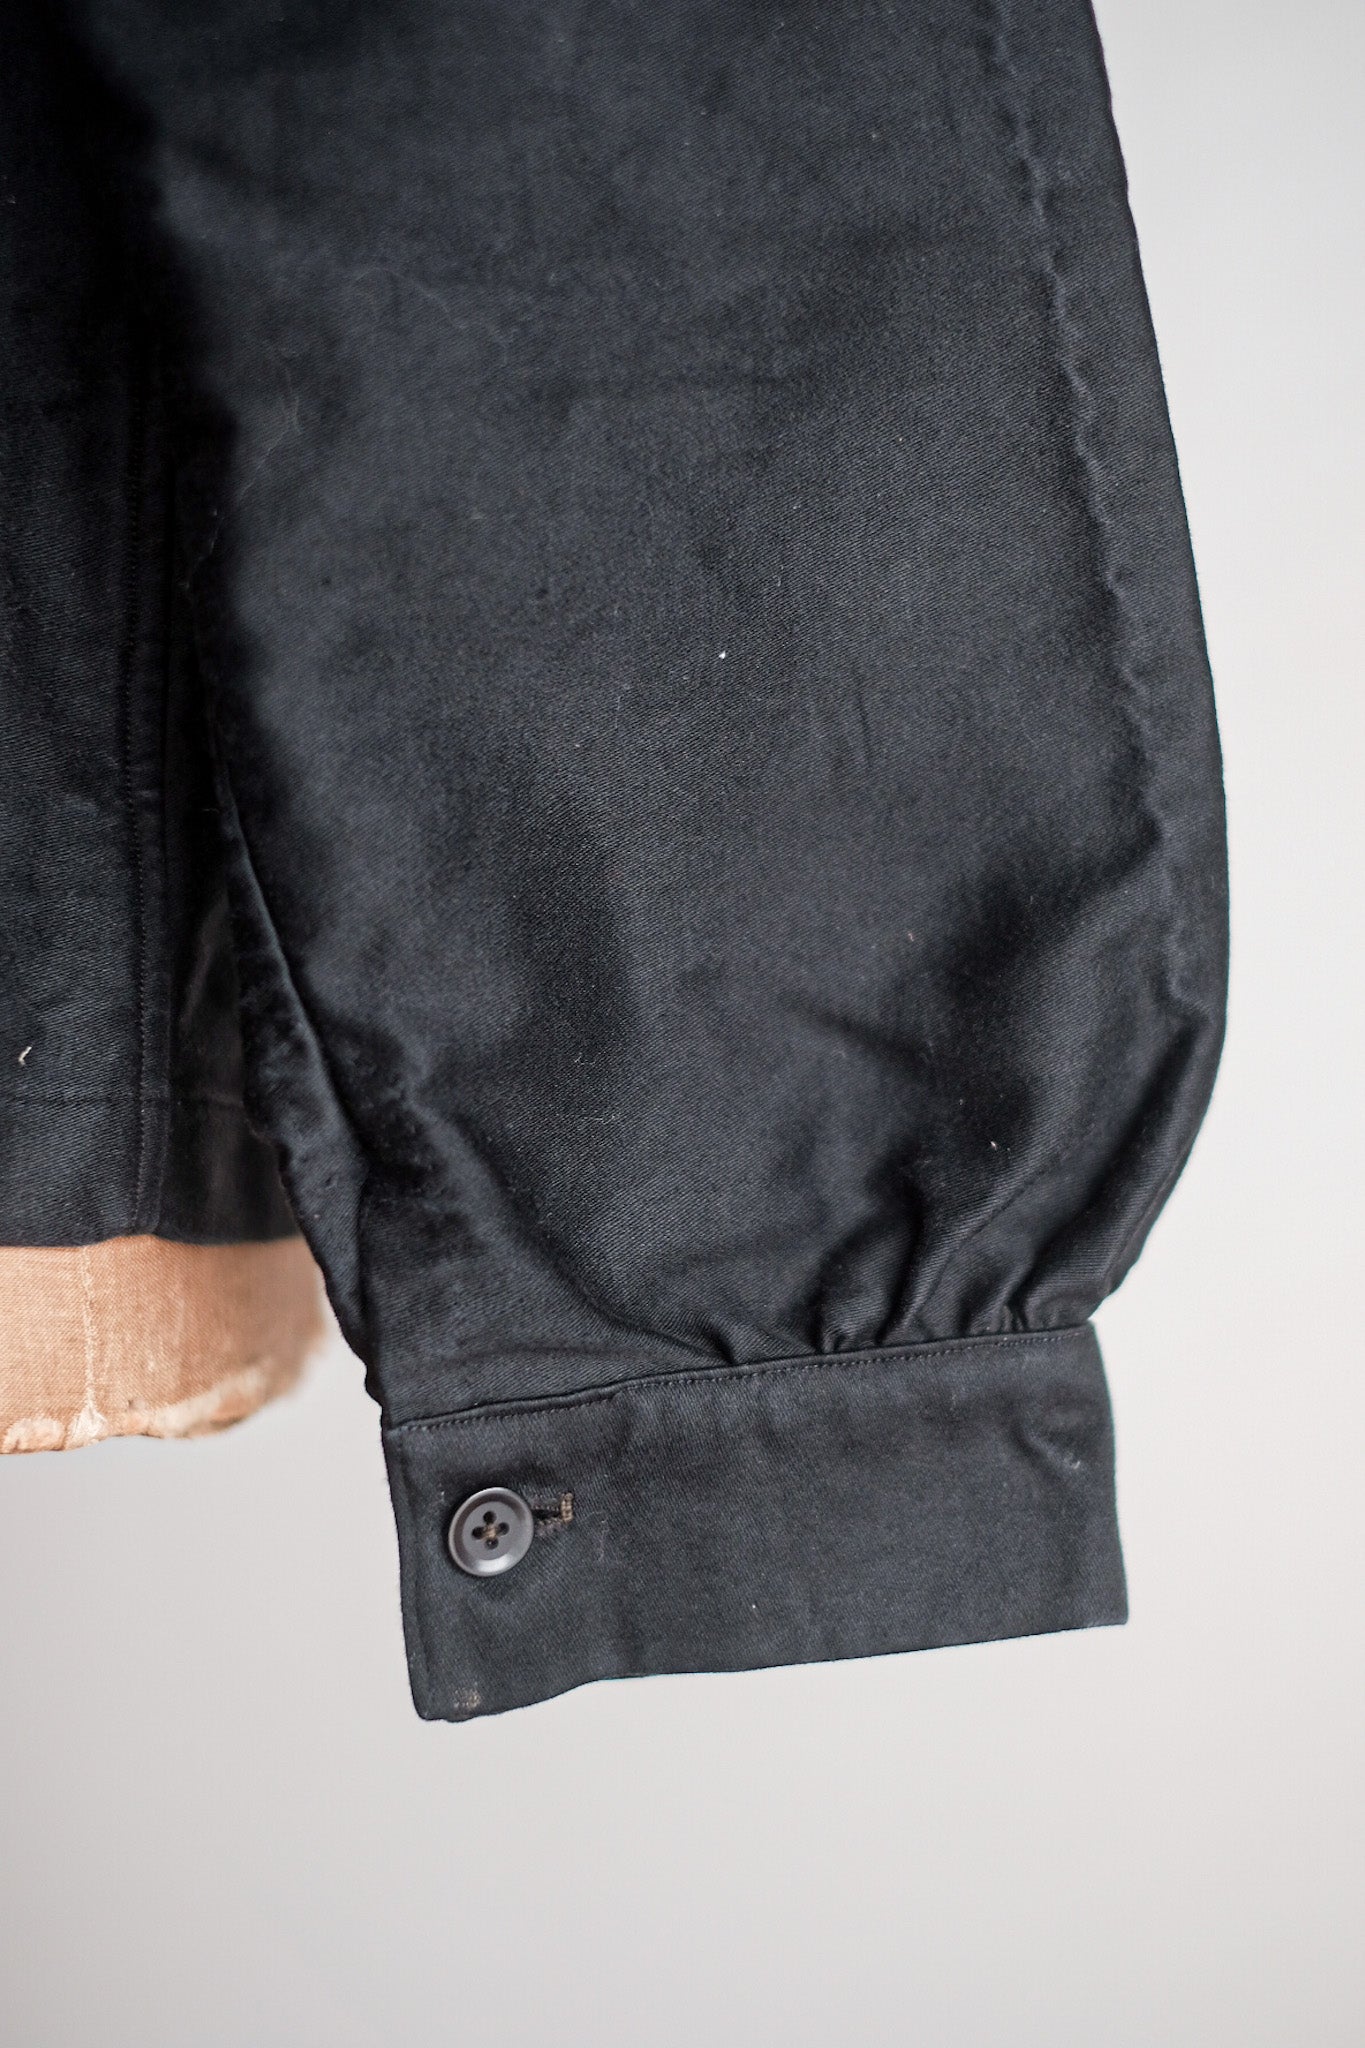 [〜20年代]法國復古黑色摩爾斯金鞋夾克“ 6個按鈕”“死庫存”